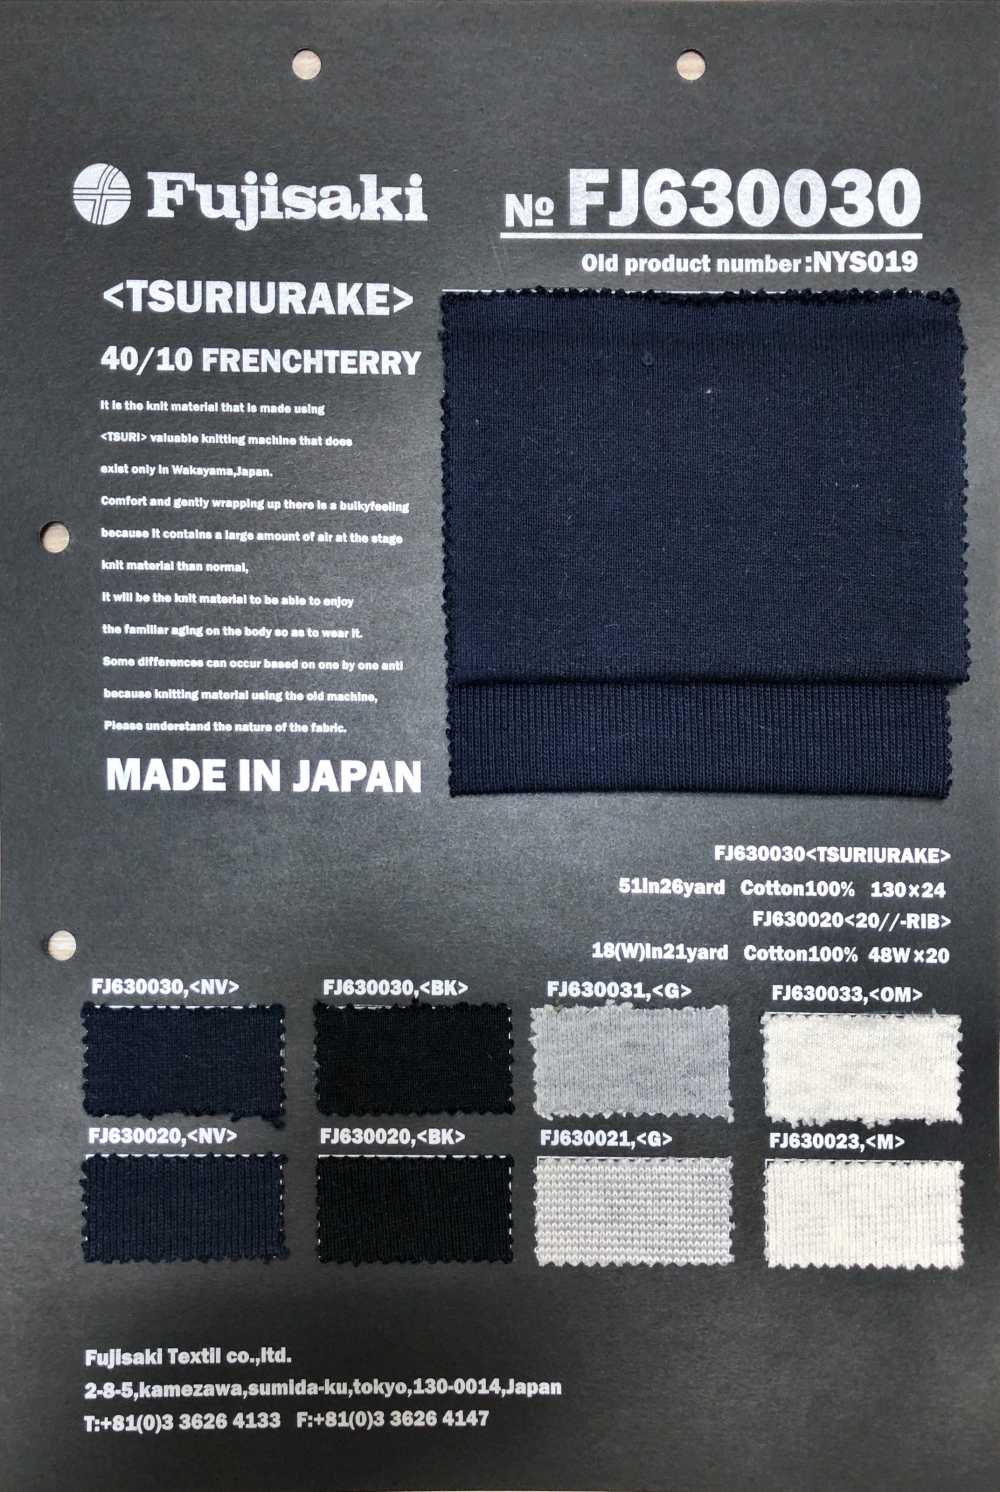 FJ630030 Vải Thun Nỉ Và May Vải Fujisaki Textile